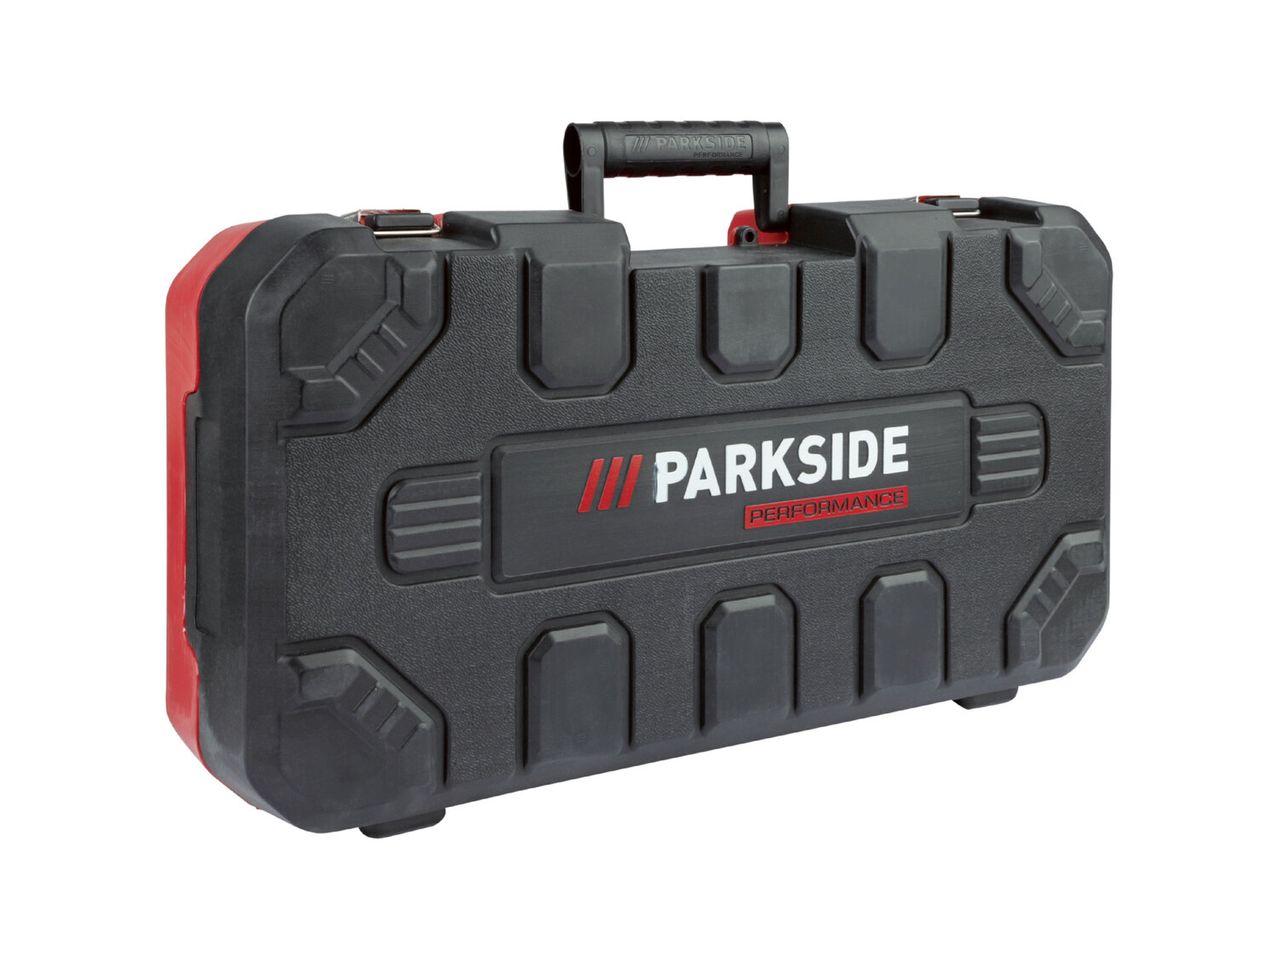 Ver empliada: Parkside Performance® Martelo Combinado 20 V Sem Bateria - Imagem 2